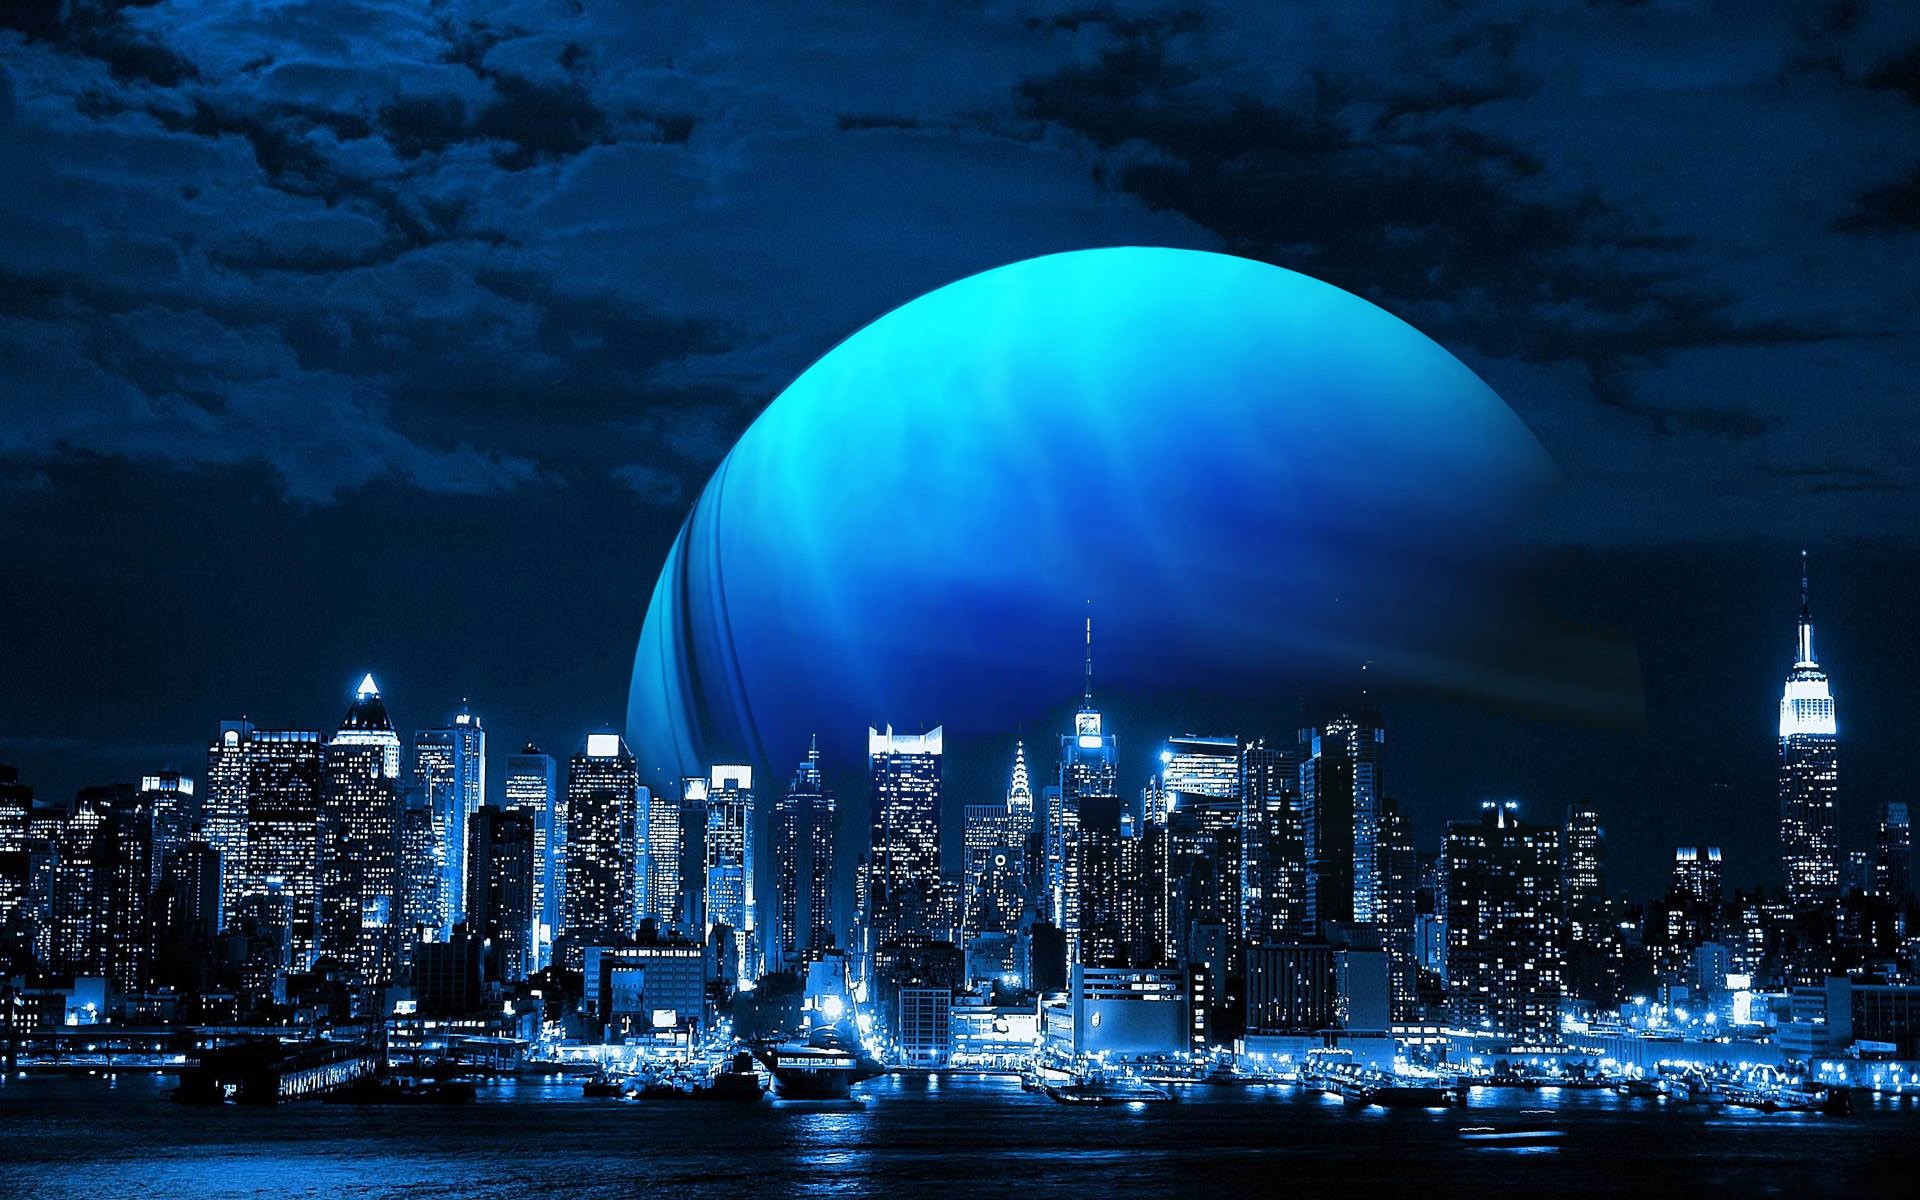 Descarga gratuita de fondo de pantalla para móvil de Fantasía, Luna, Ciudad, Rascacielos, Planeta.